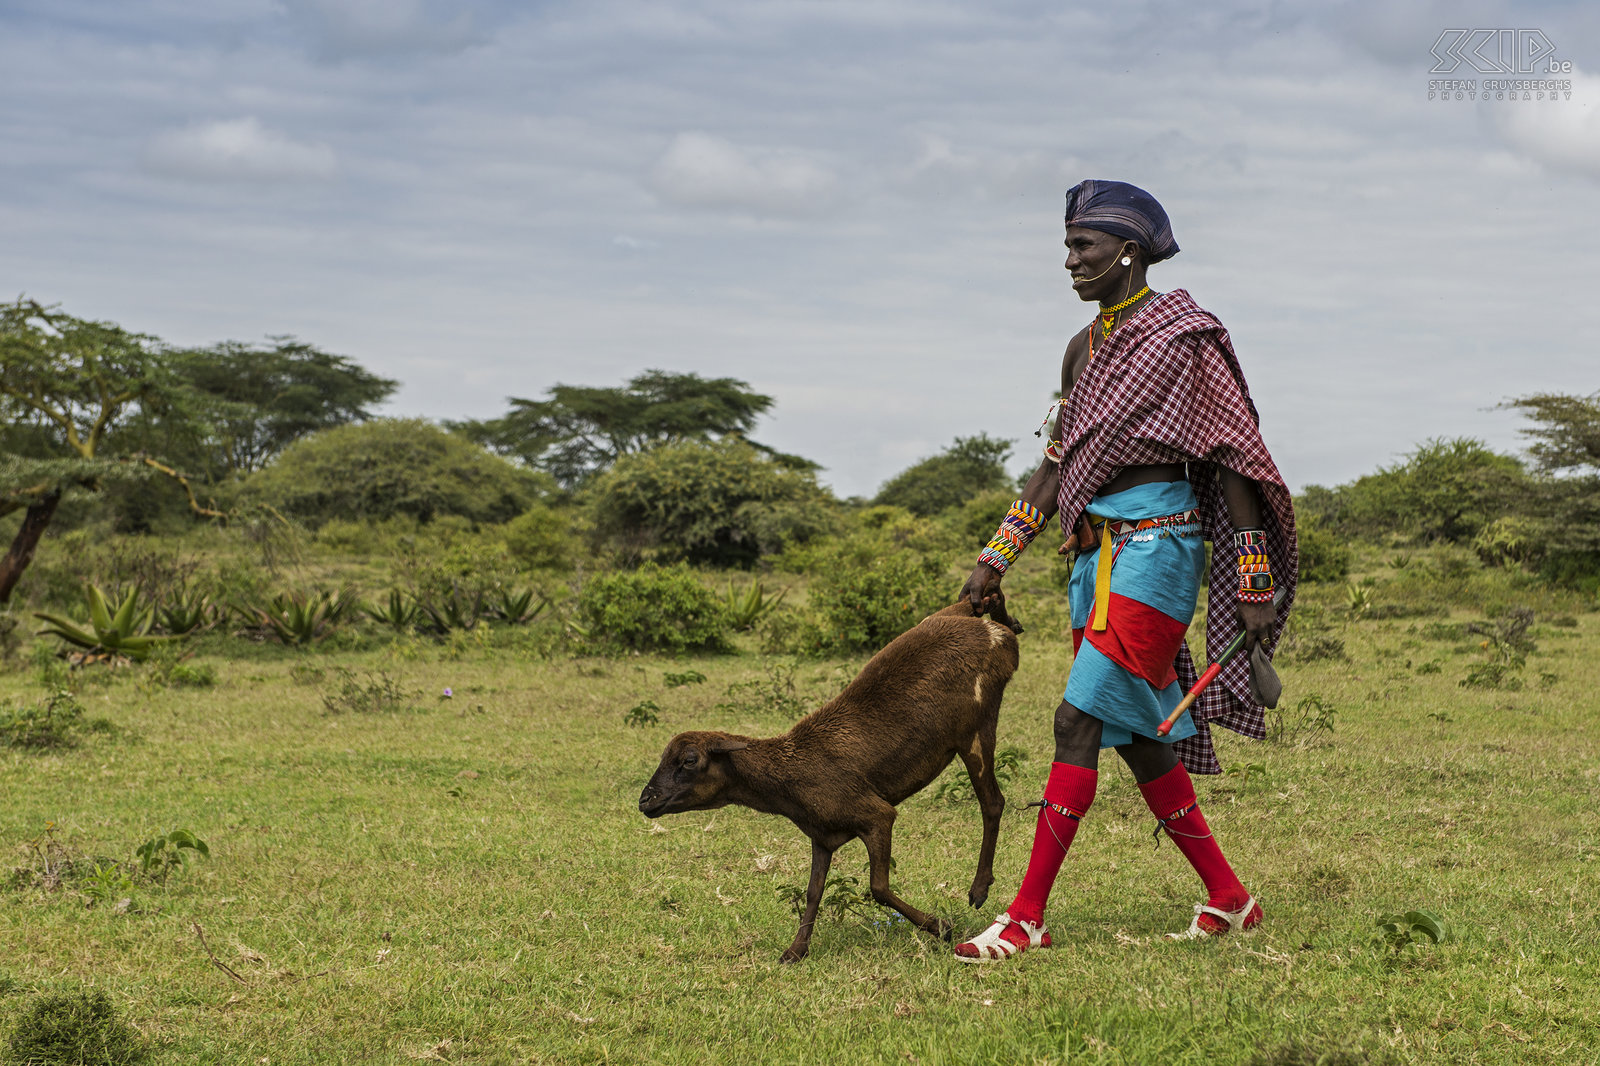 Kisima - Samburu moran met geit Samburu moran (krijger) met een geit op de veemarkt van Kisima. Stefan Cruysberghs